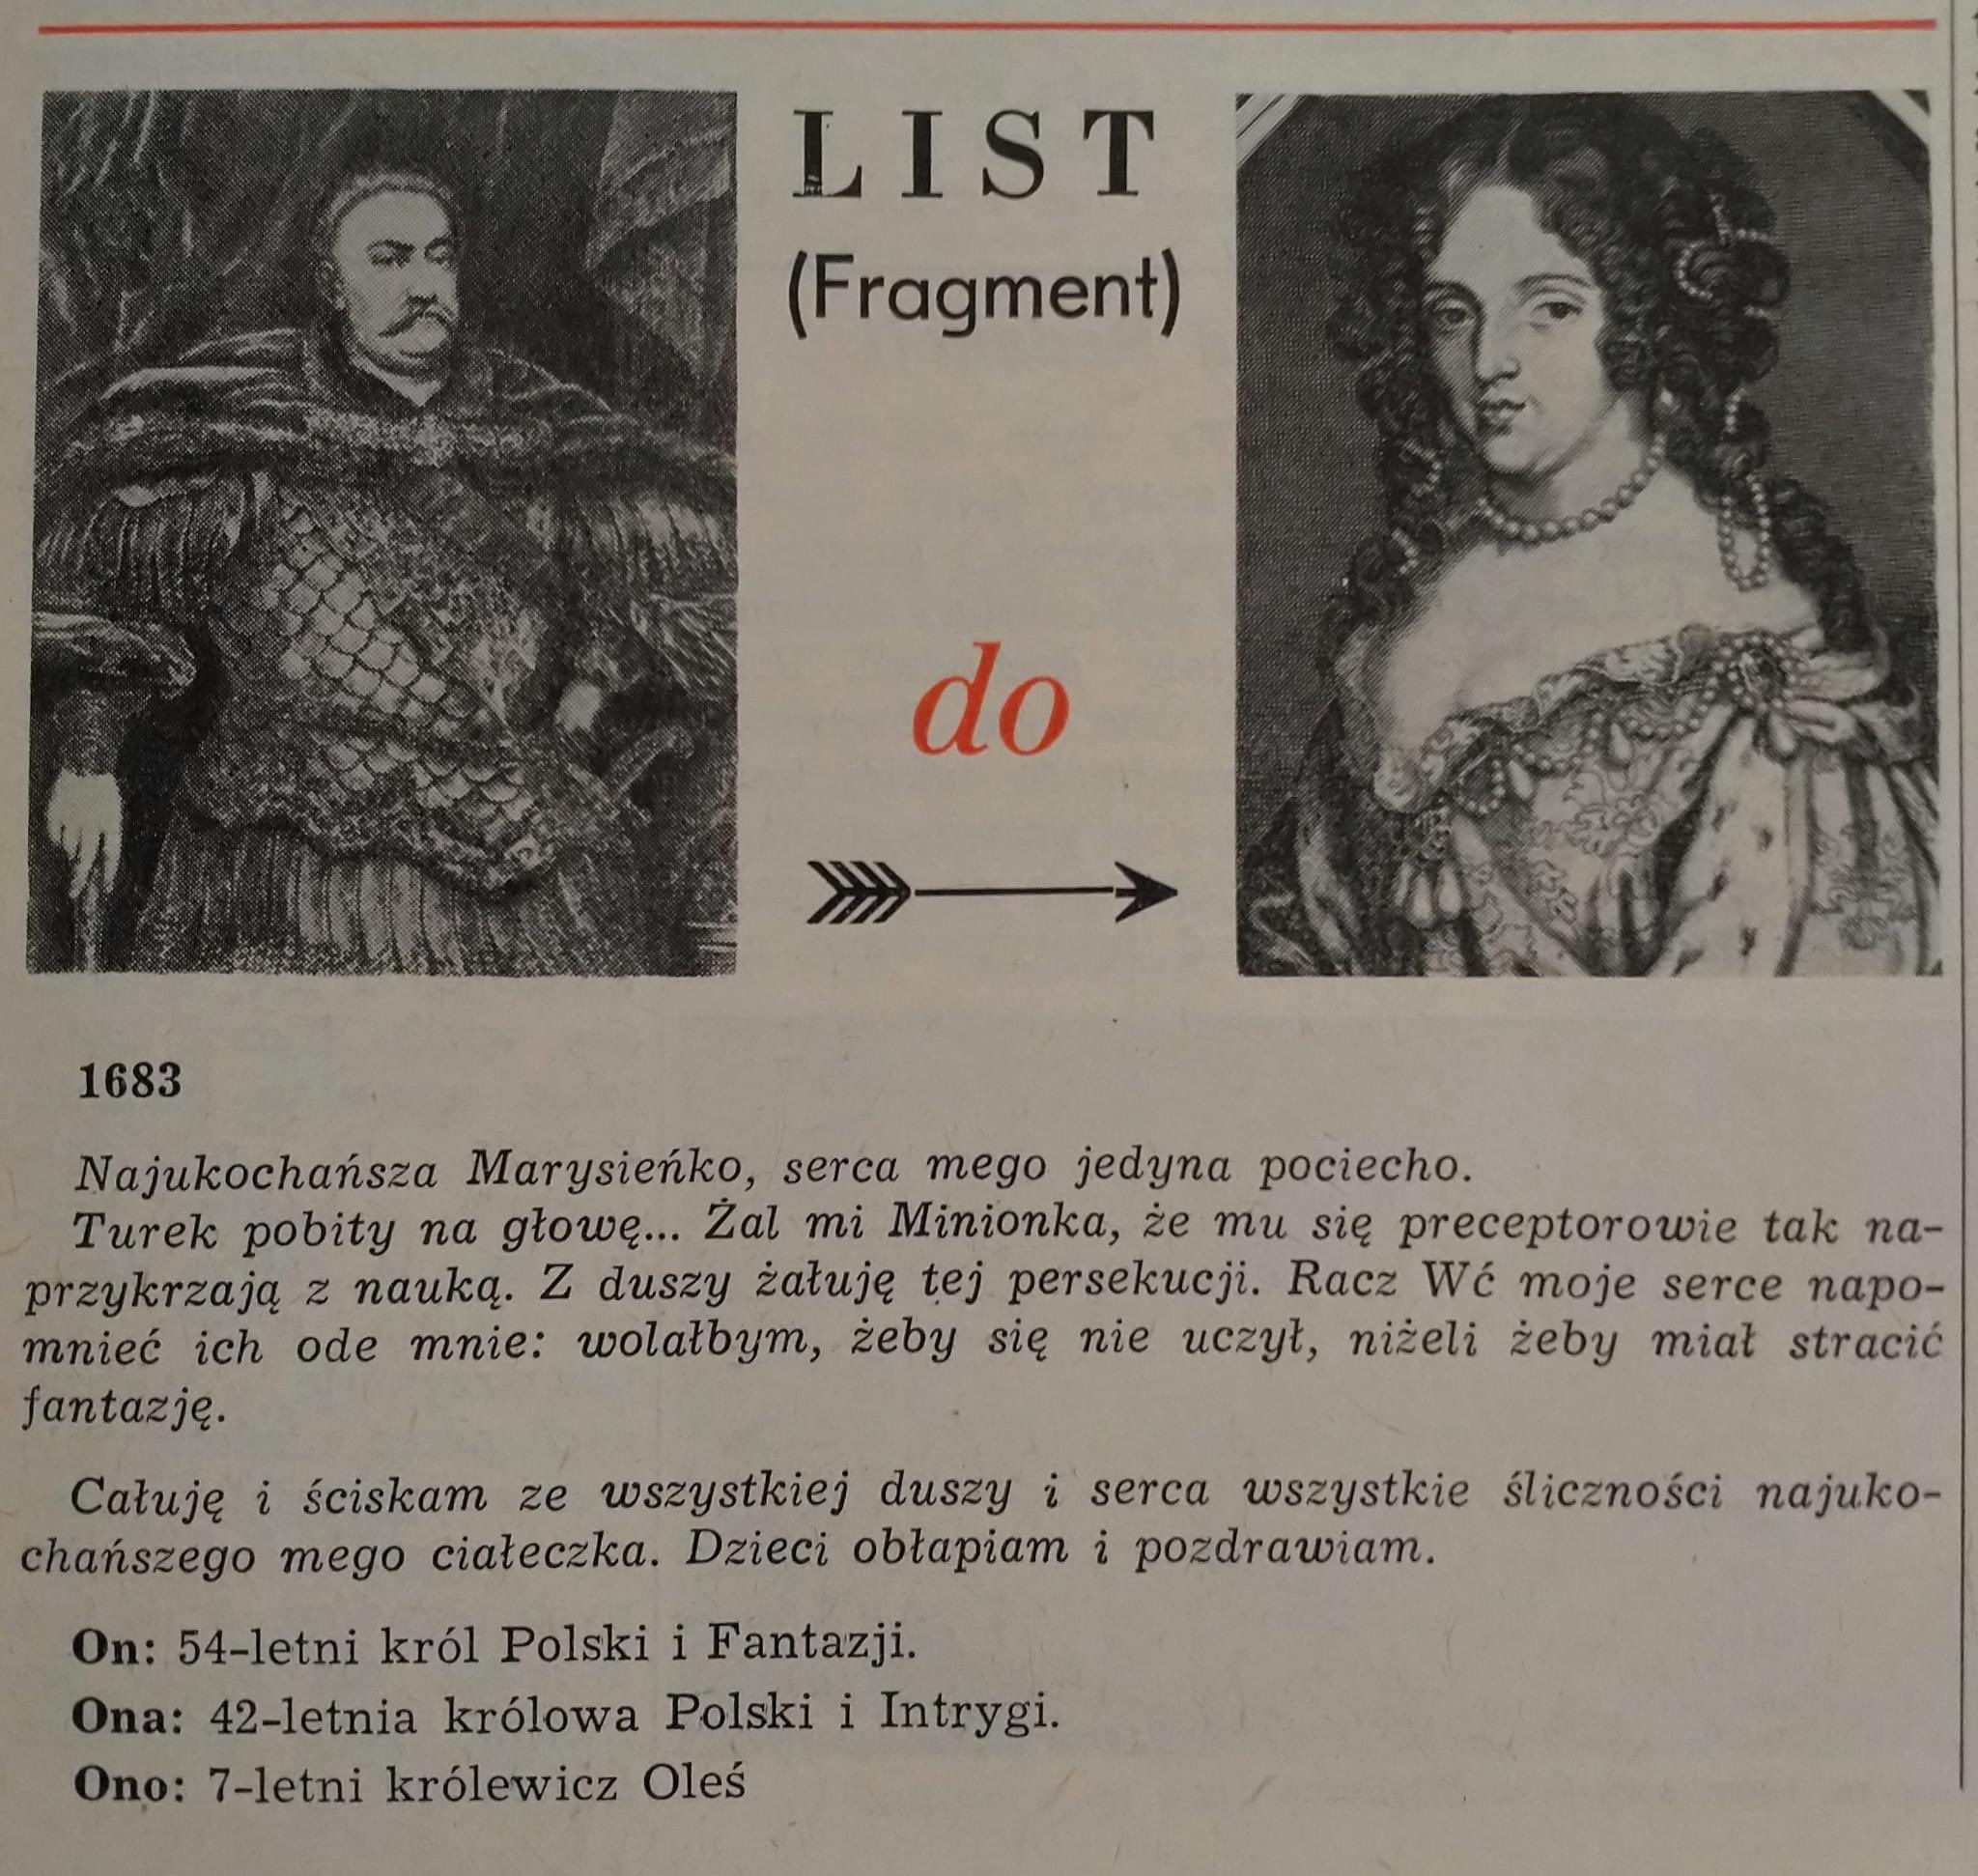 1683 rok Jan III Sobieski pisze list do ukochanej Marysieńki